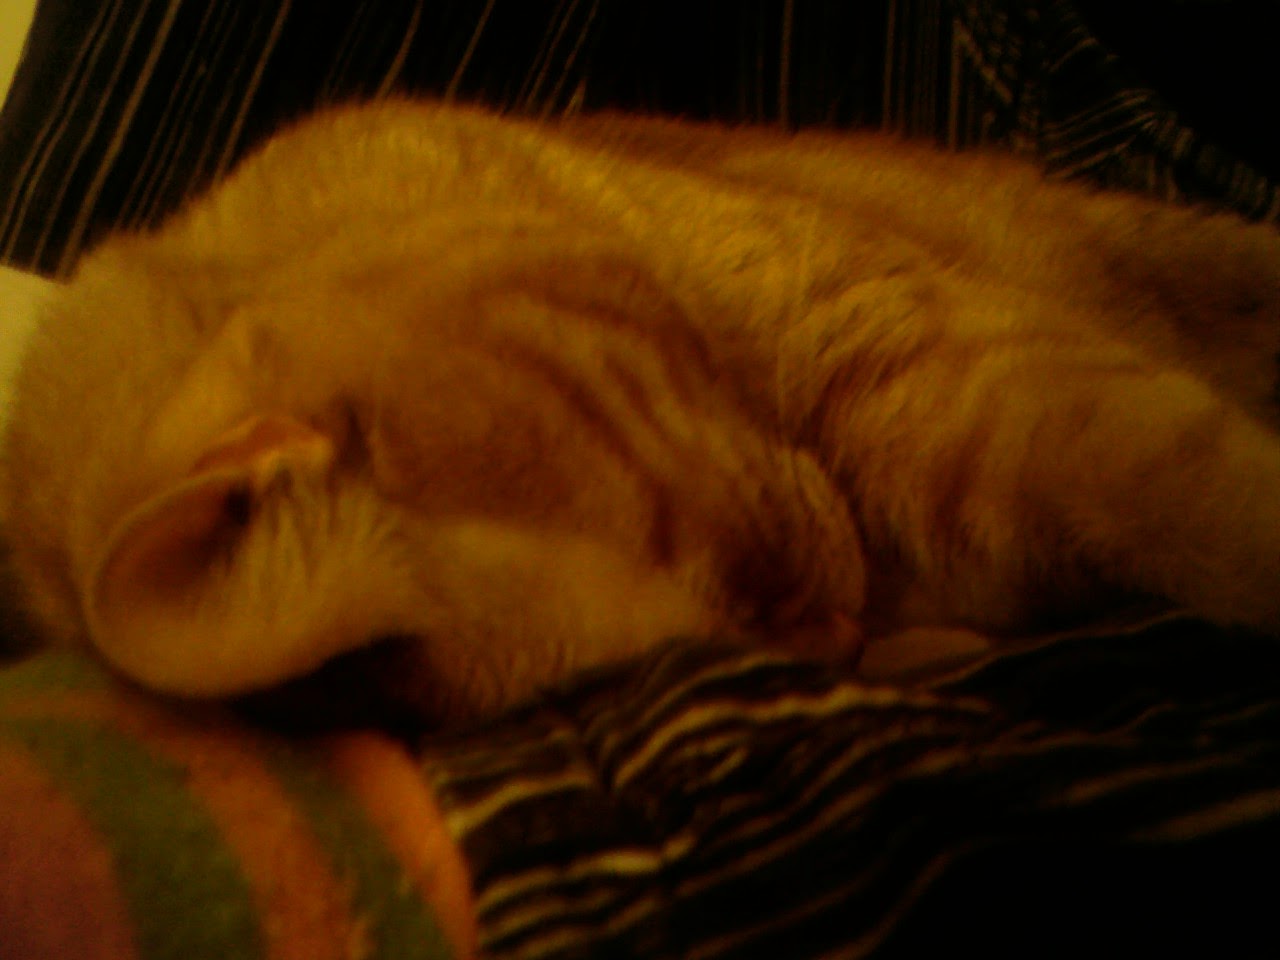 Gros plan sur Clément le chat qui a la tête serrée contre ma jambe gauche, de sorte à ce qu'on voit à peine son visage, le corps tenu contre ma jambe droite relevée.